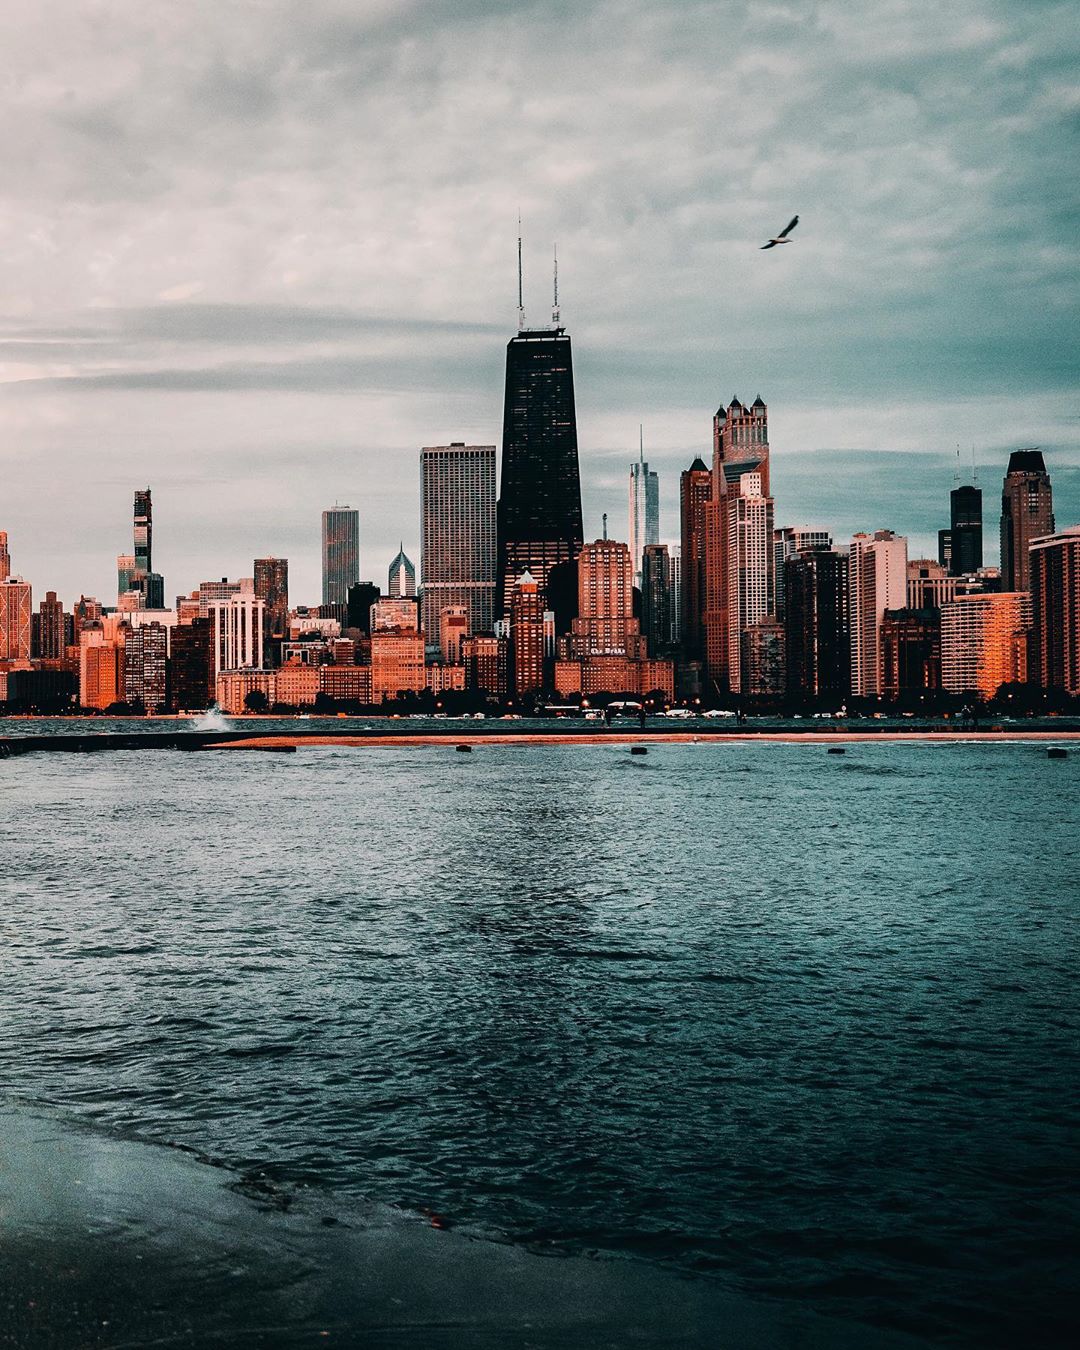 Чикаго на атмосферных снимках Бенджамина Сутера городской, Бенджамин, образом, Читать, подписчиков, почти, Instagram, делится, работами, Своими, фотографии, пейзажной, архитектурной, фокусируется, главным, Сутер, Иллинойс, Чикаго, проживающий, время